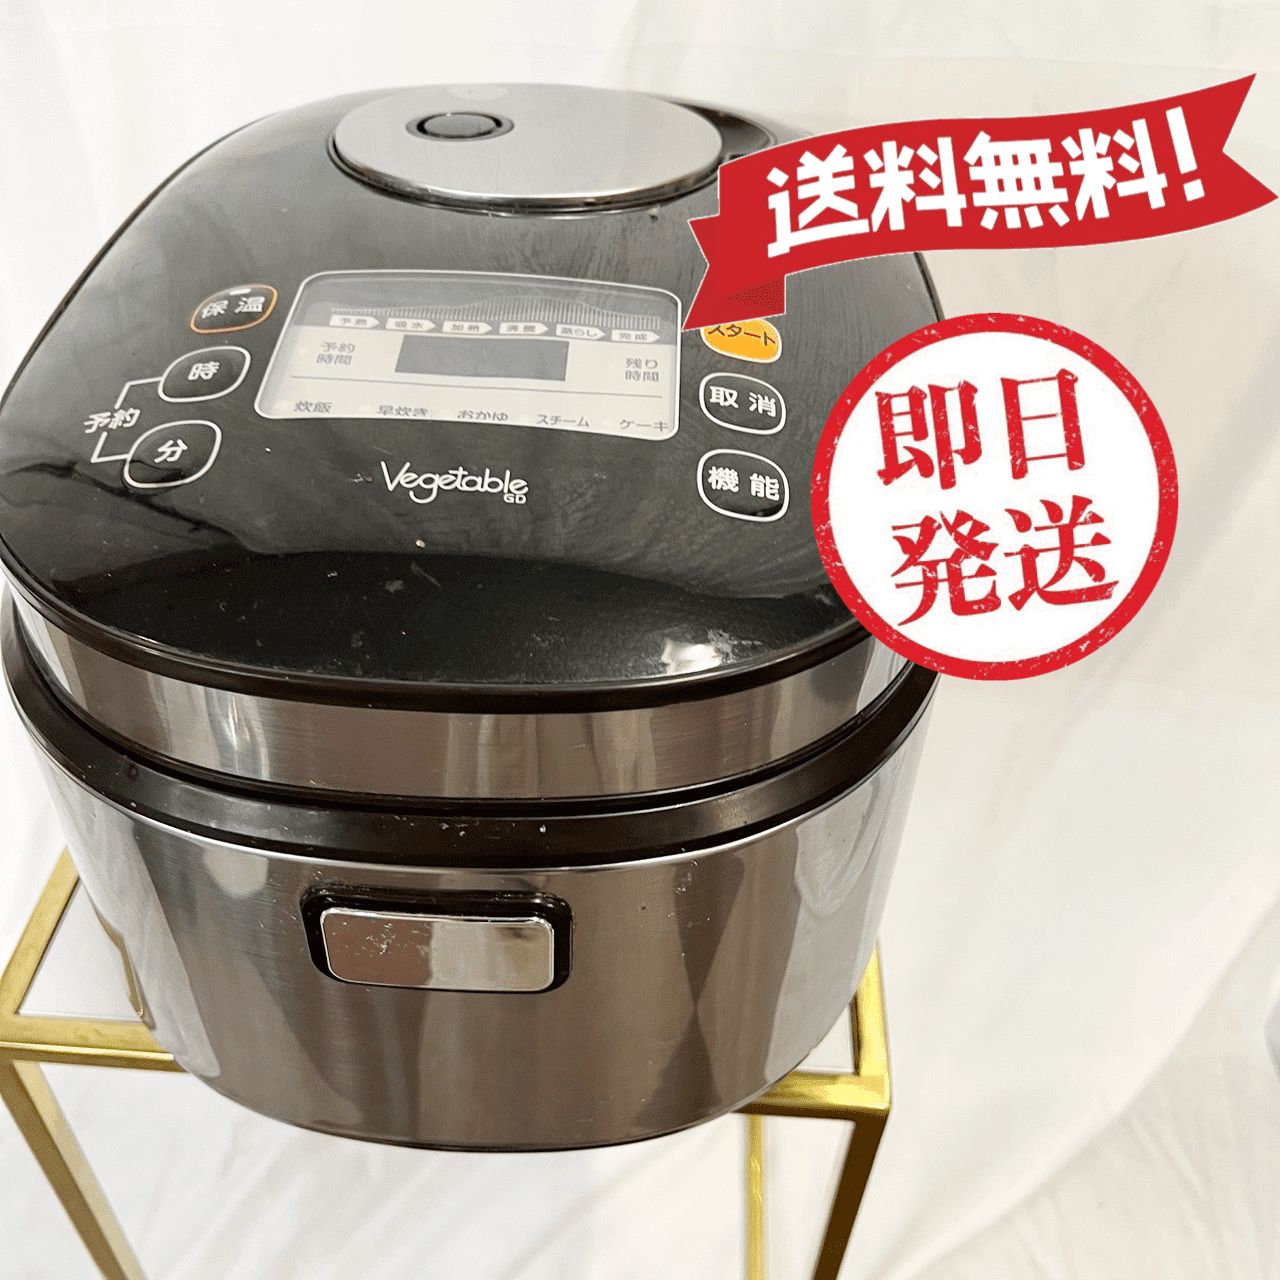 マイコン炊飯ジャー GD-M181 2020年製②(美品)① - メルカリ